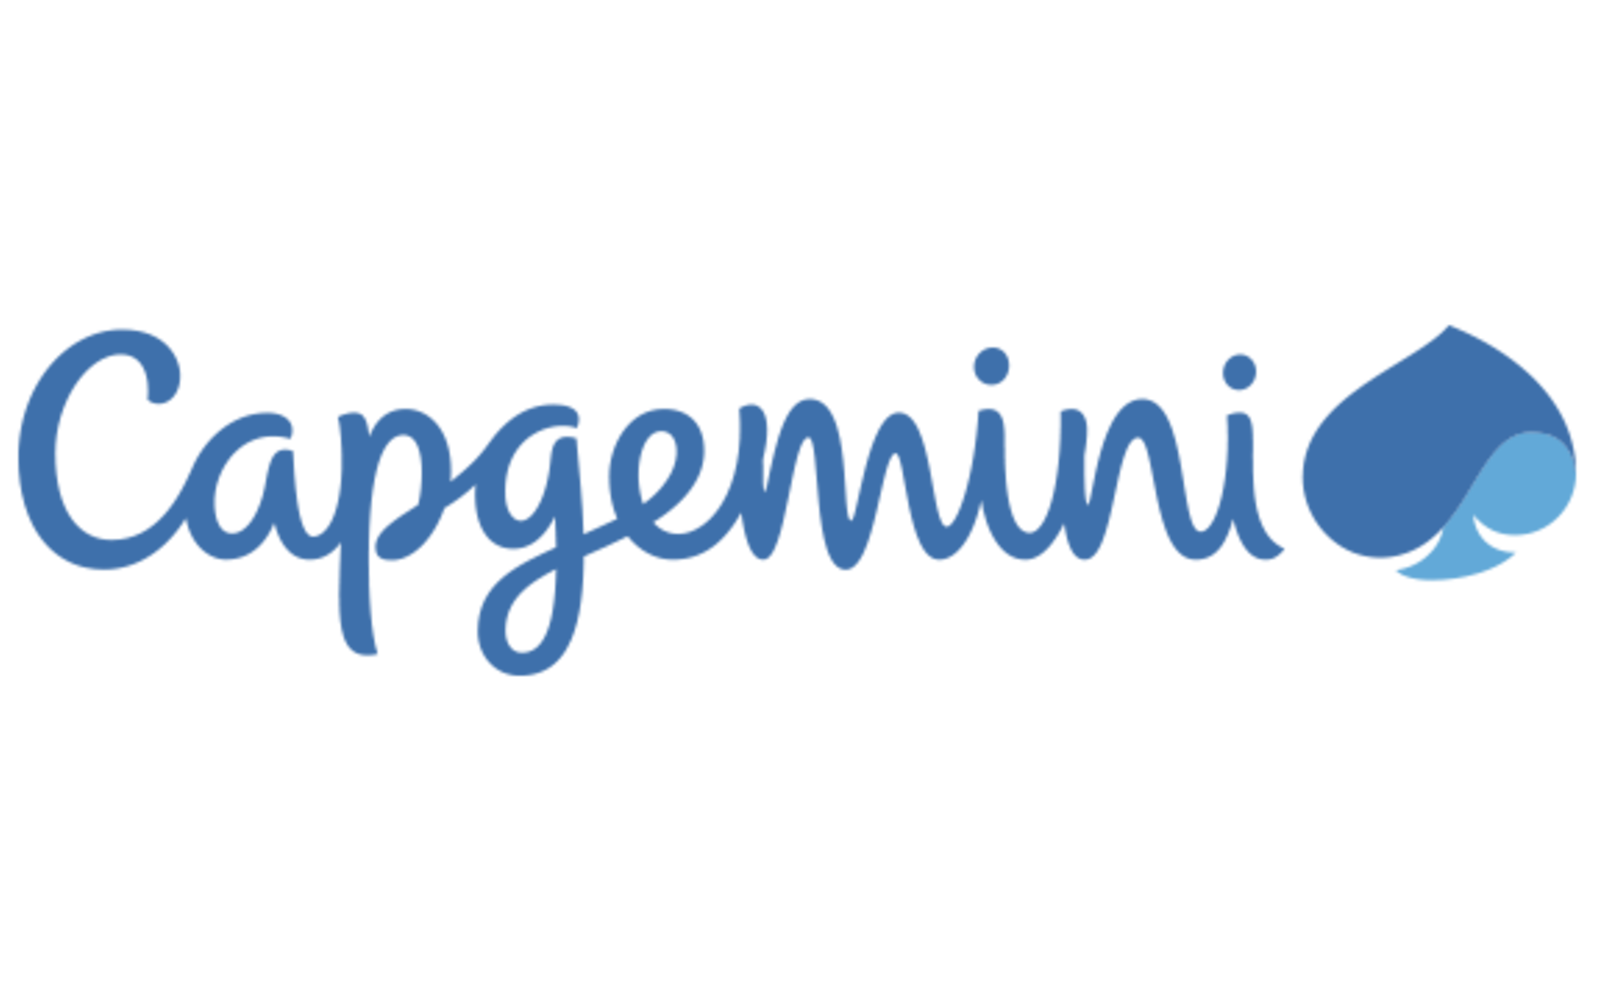 Capgemini.png